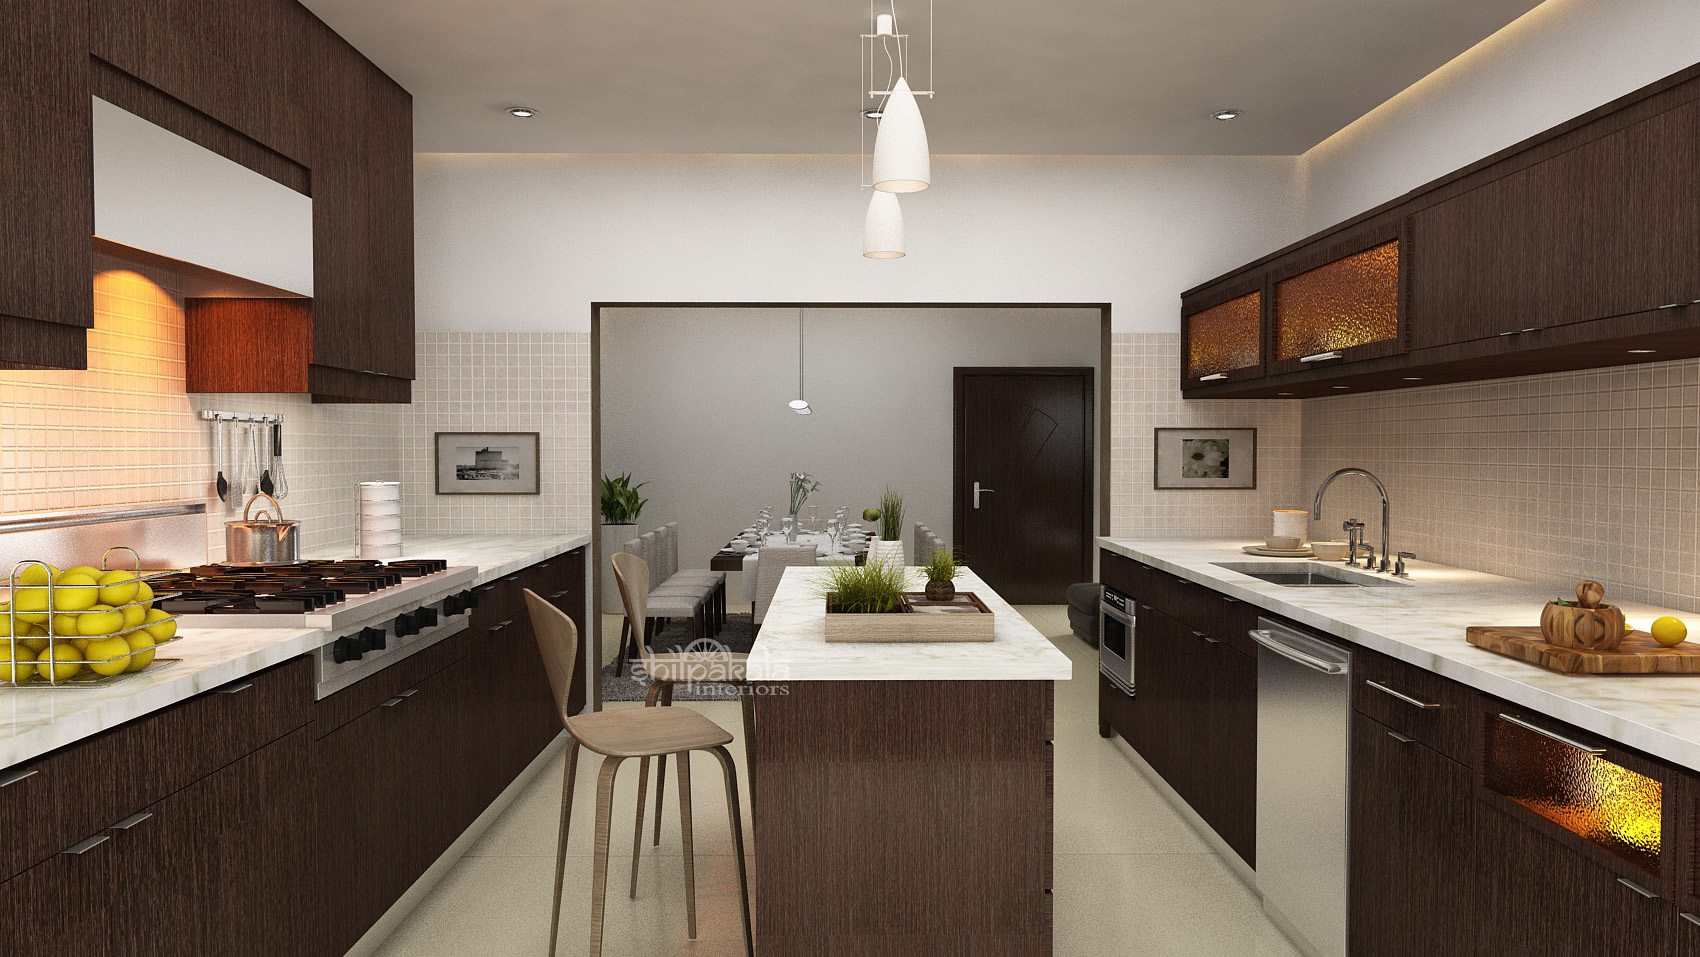 kitchen interior design idea kerala style